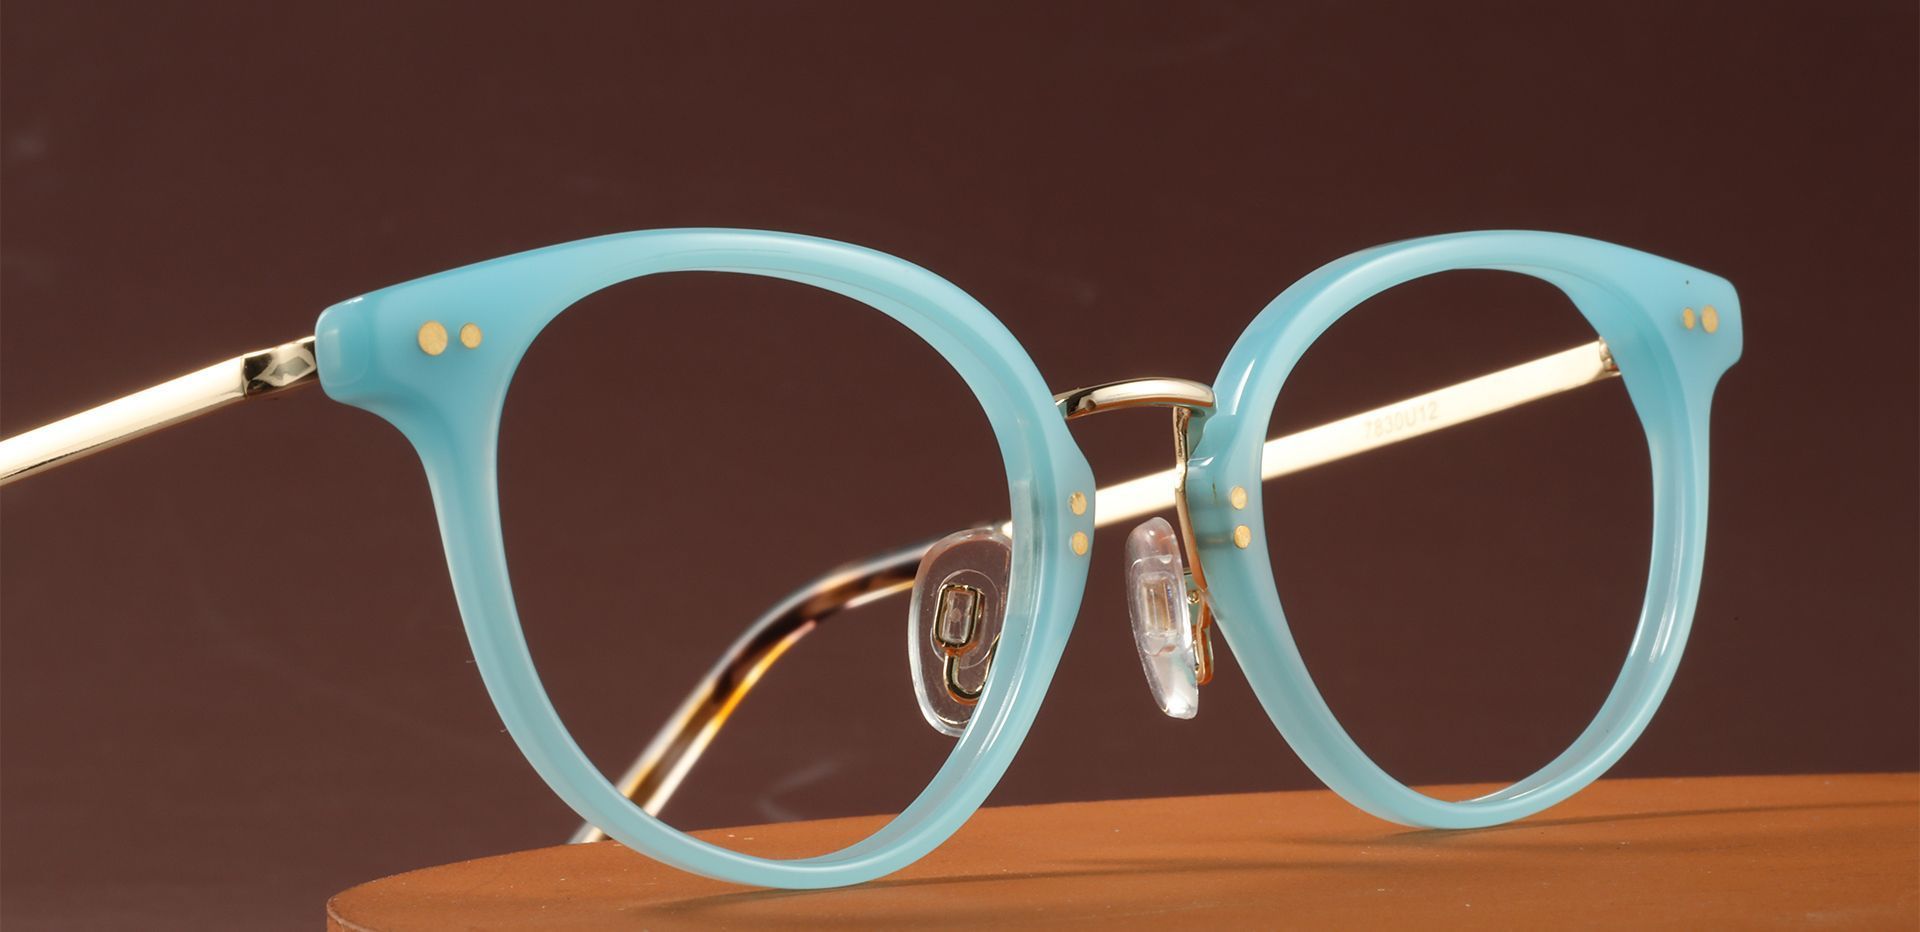 Omaha Oval Prescription Glasses - Blue | Women's Eyeglasses | Payne Glasses